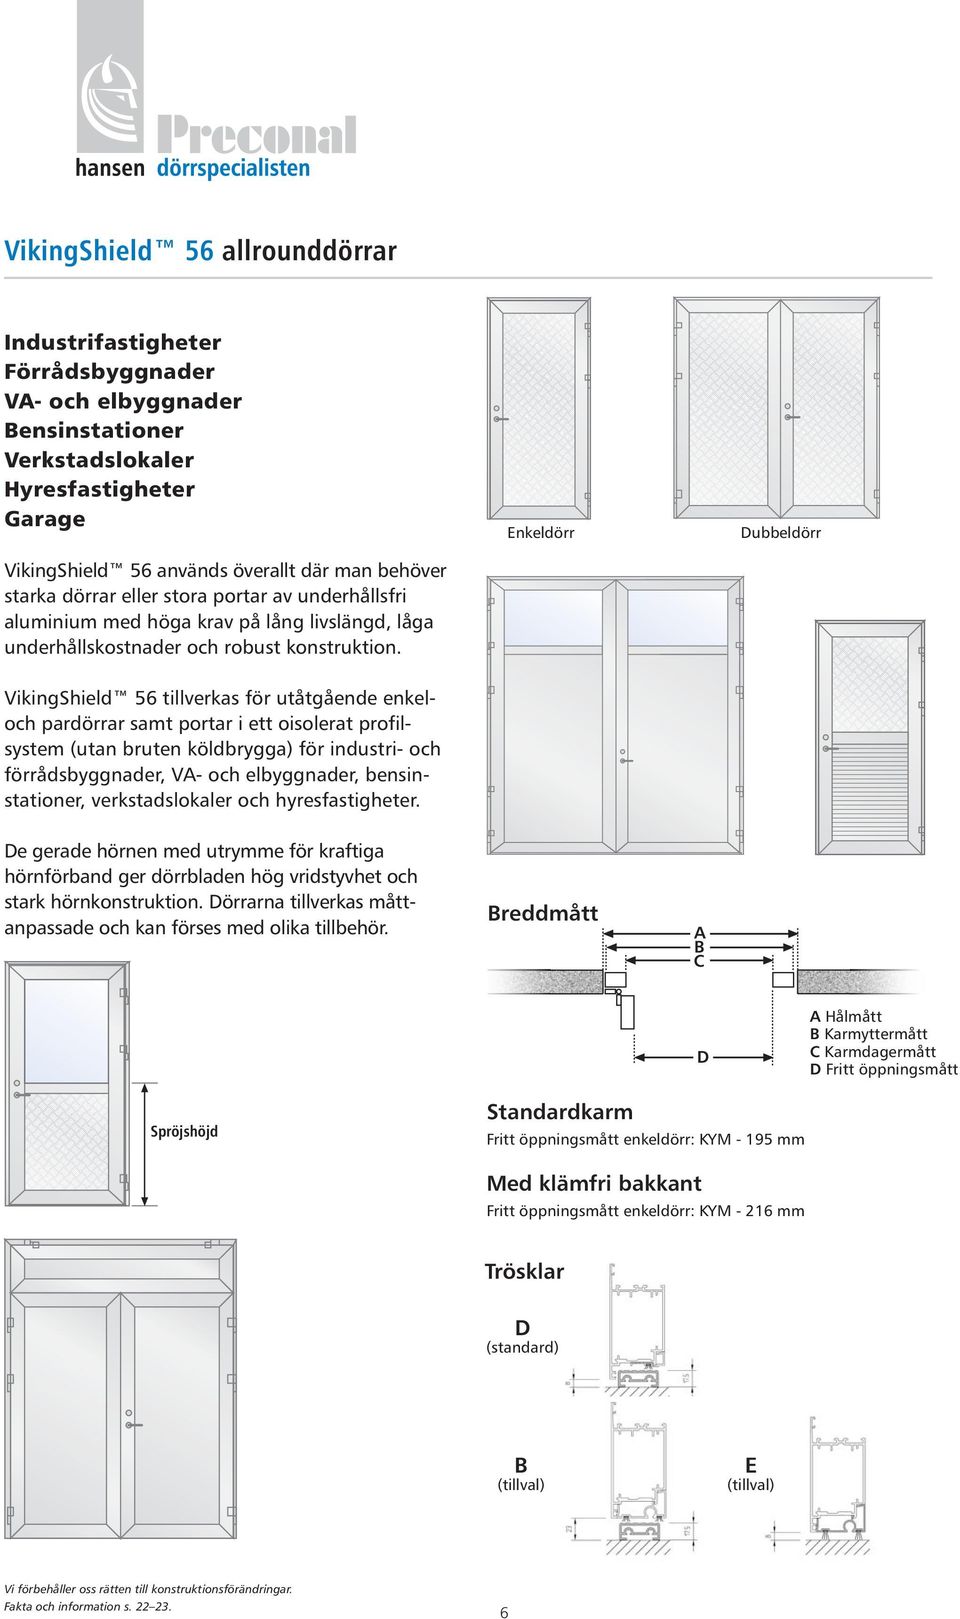 Enkeldörr Dubbeldörr VikingShield 56 tillverkas för utåtgående enkeloch pardörrar samt portar i ett oisolerat profilsystem (utan bruten köldbrygga) för industri- och förrådsbyggnader, VA- och